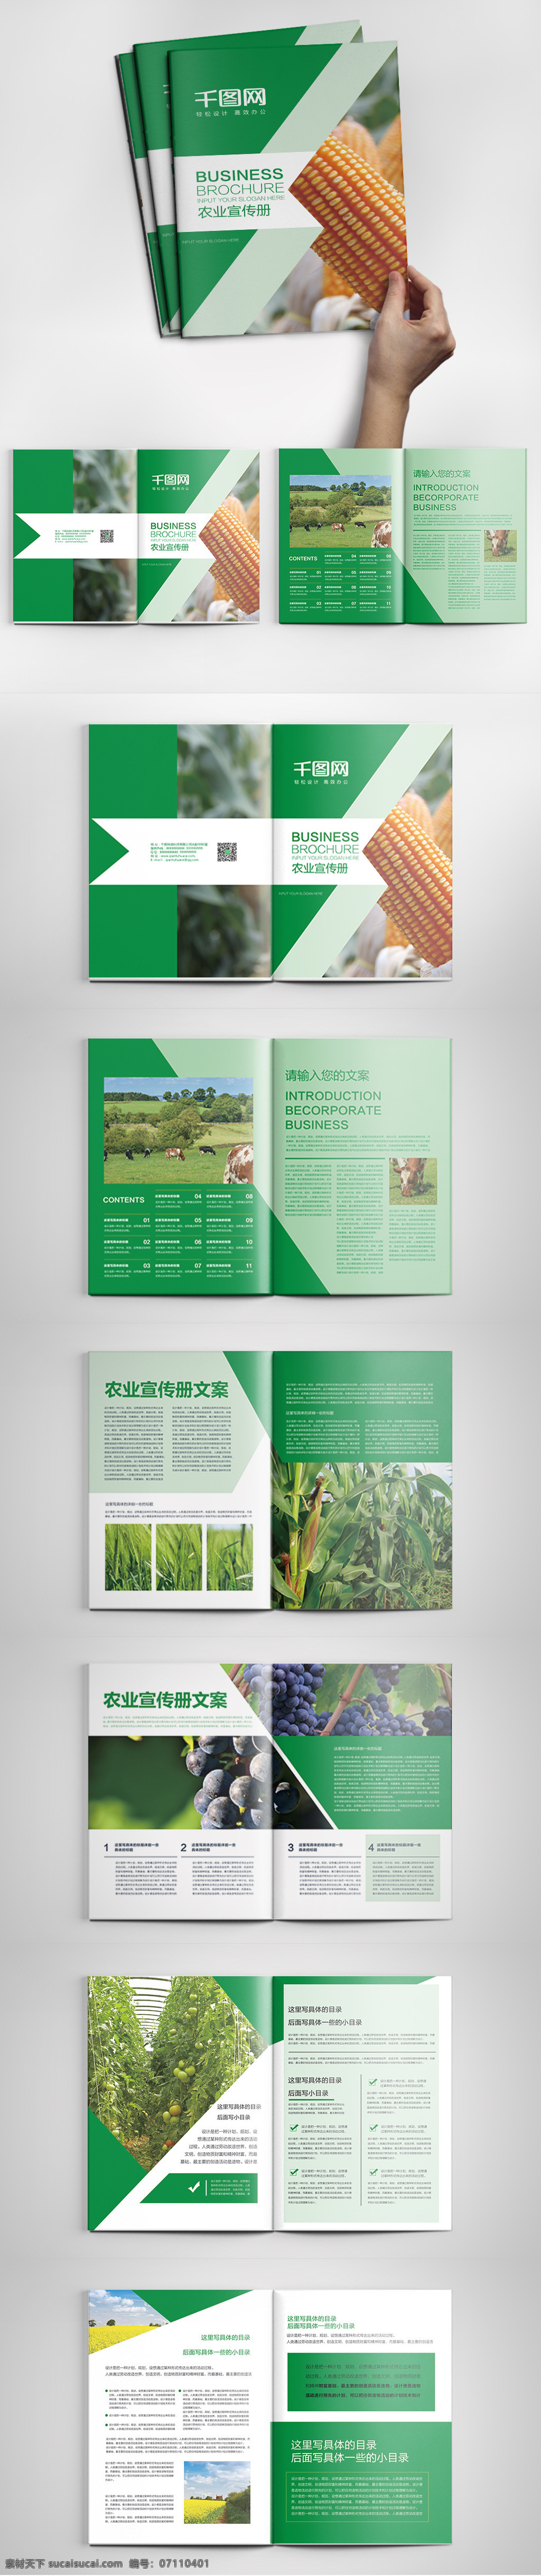 绿色 时尚 大气 农业 画册 模板 画册排版 农产品画册 农业画册 商业 宣传